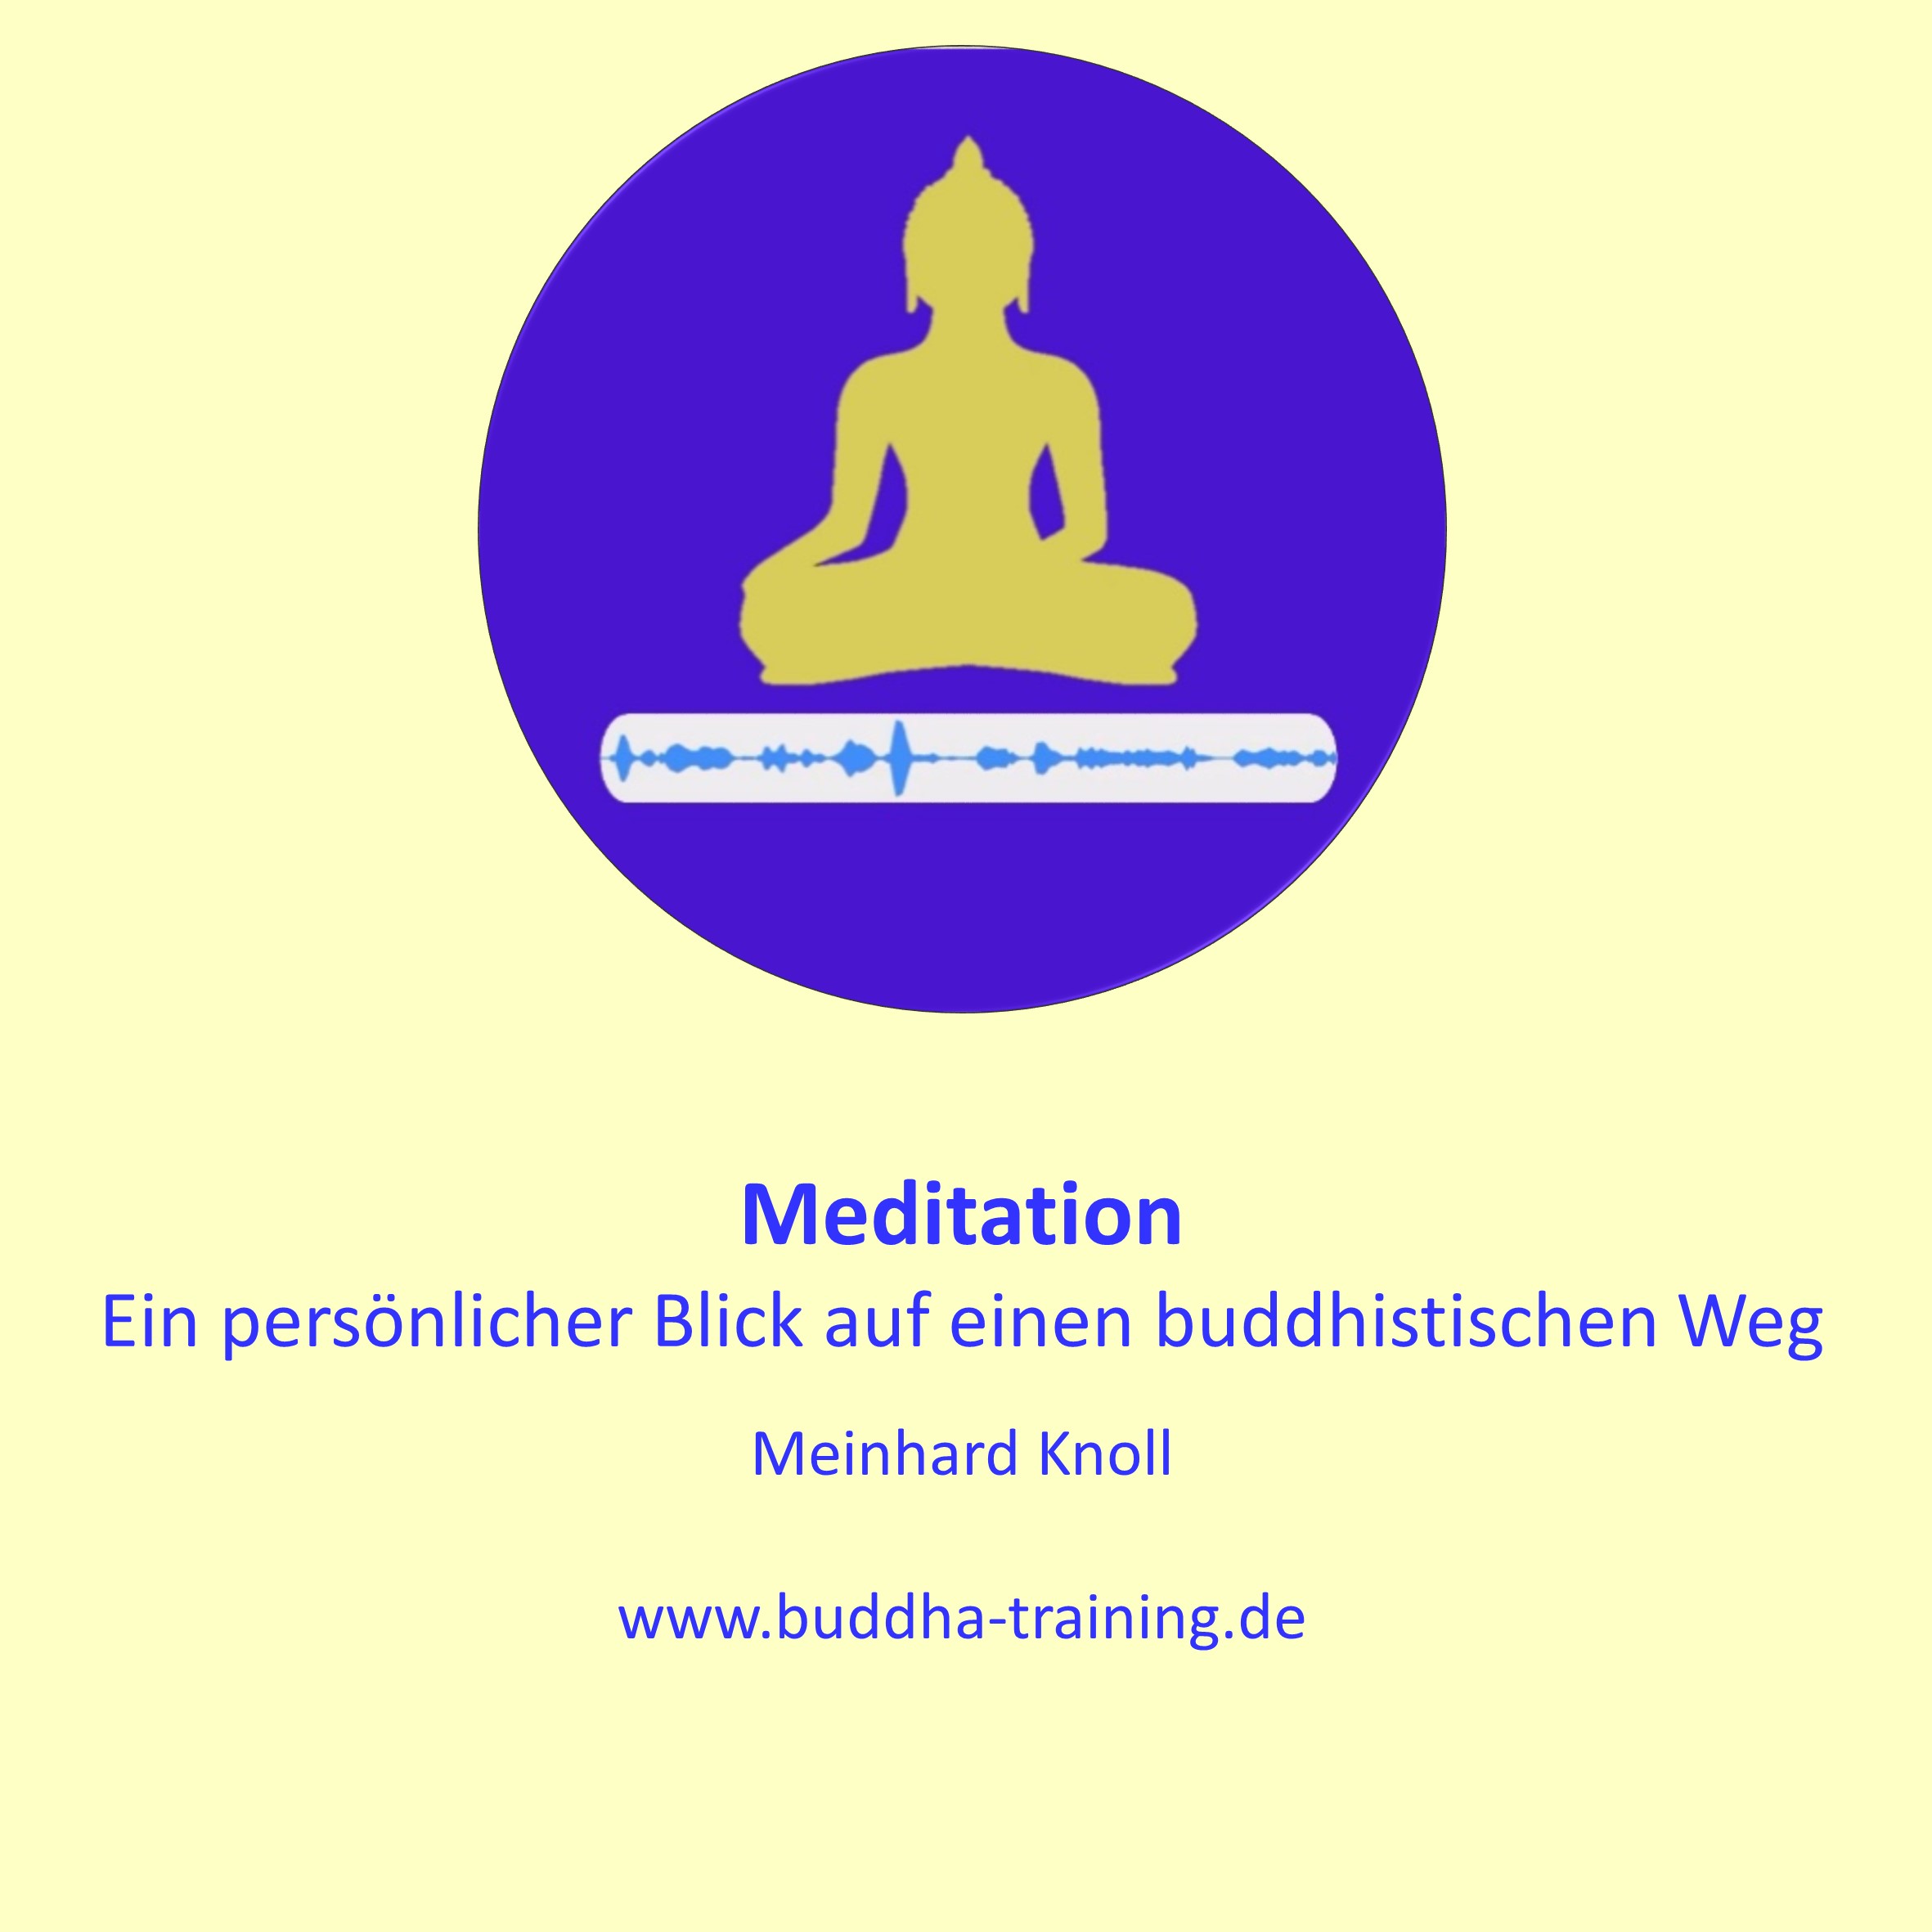 Meditation - Ein persönlicher Blick auf einen buddhistischen Weg